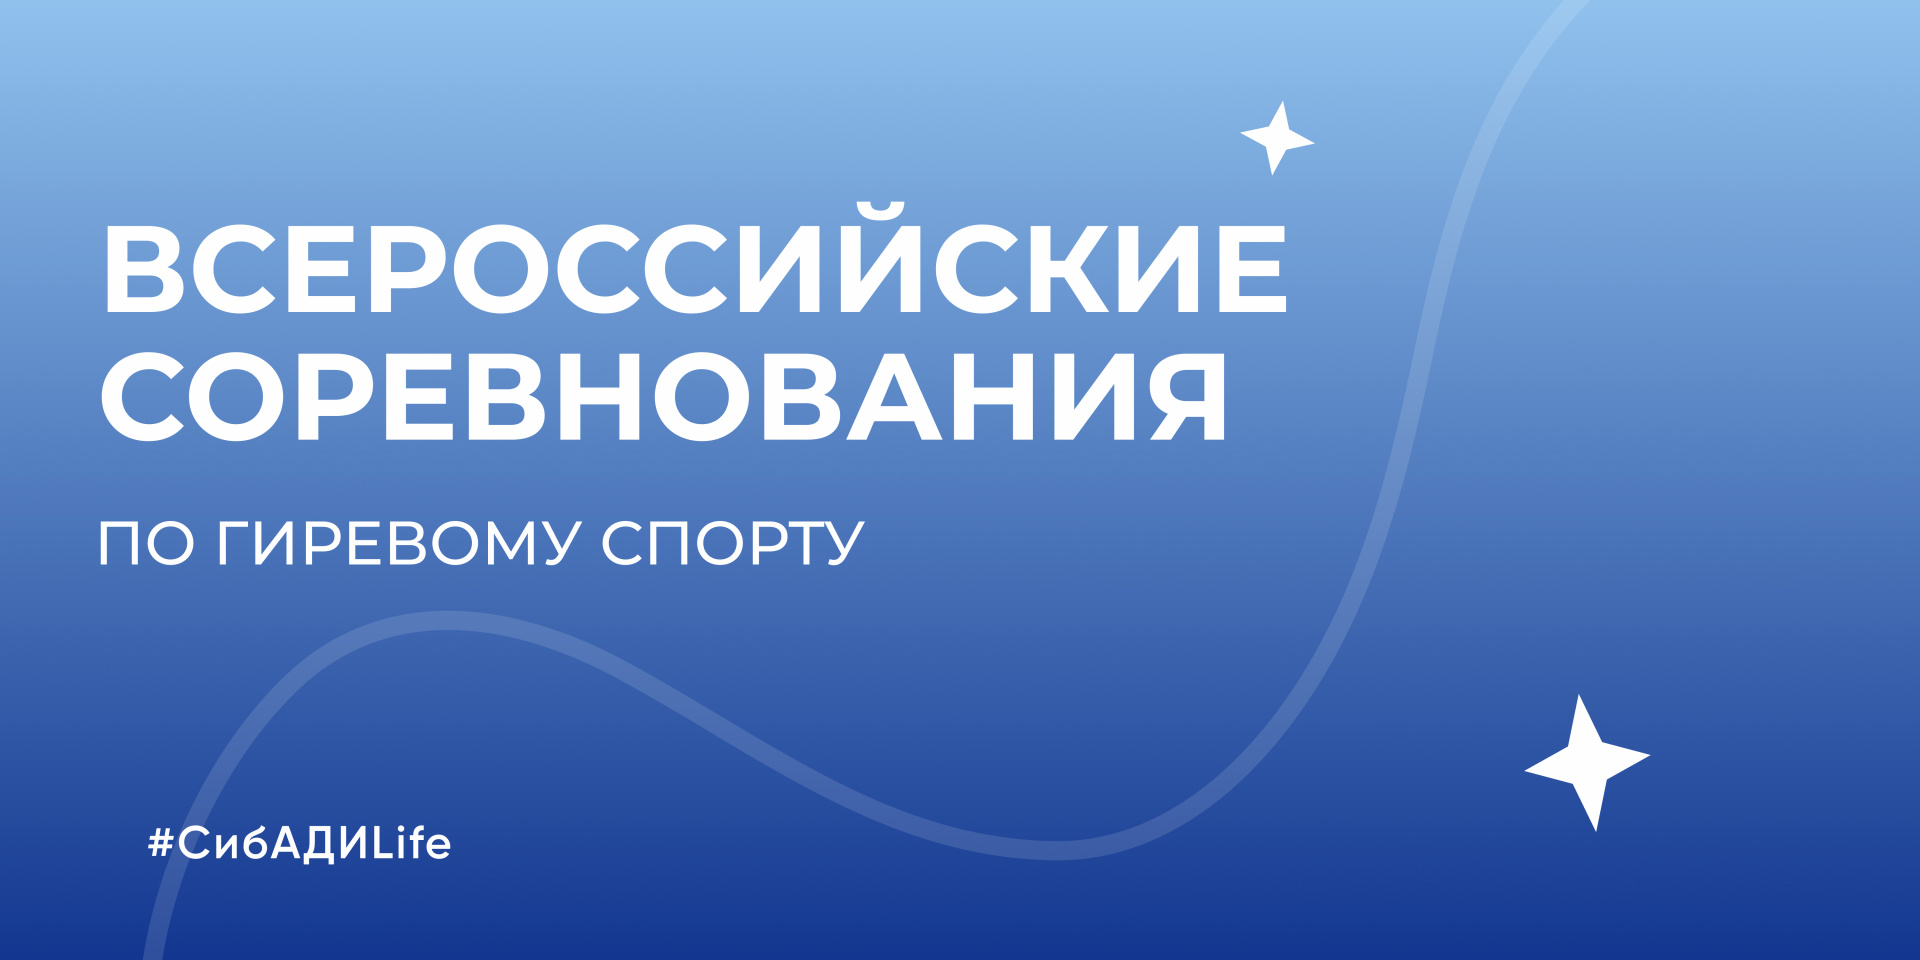 Кирилл Огородник победитель Всероссийских соревнований по гиревому спорту